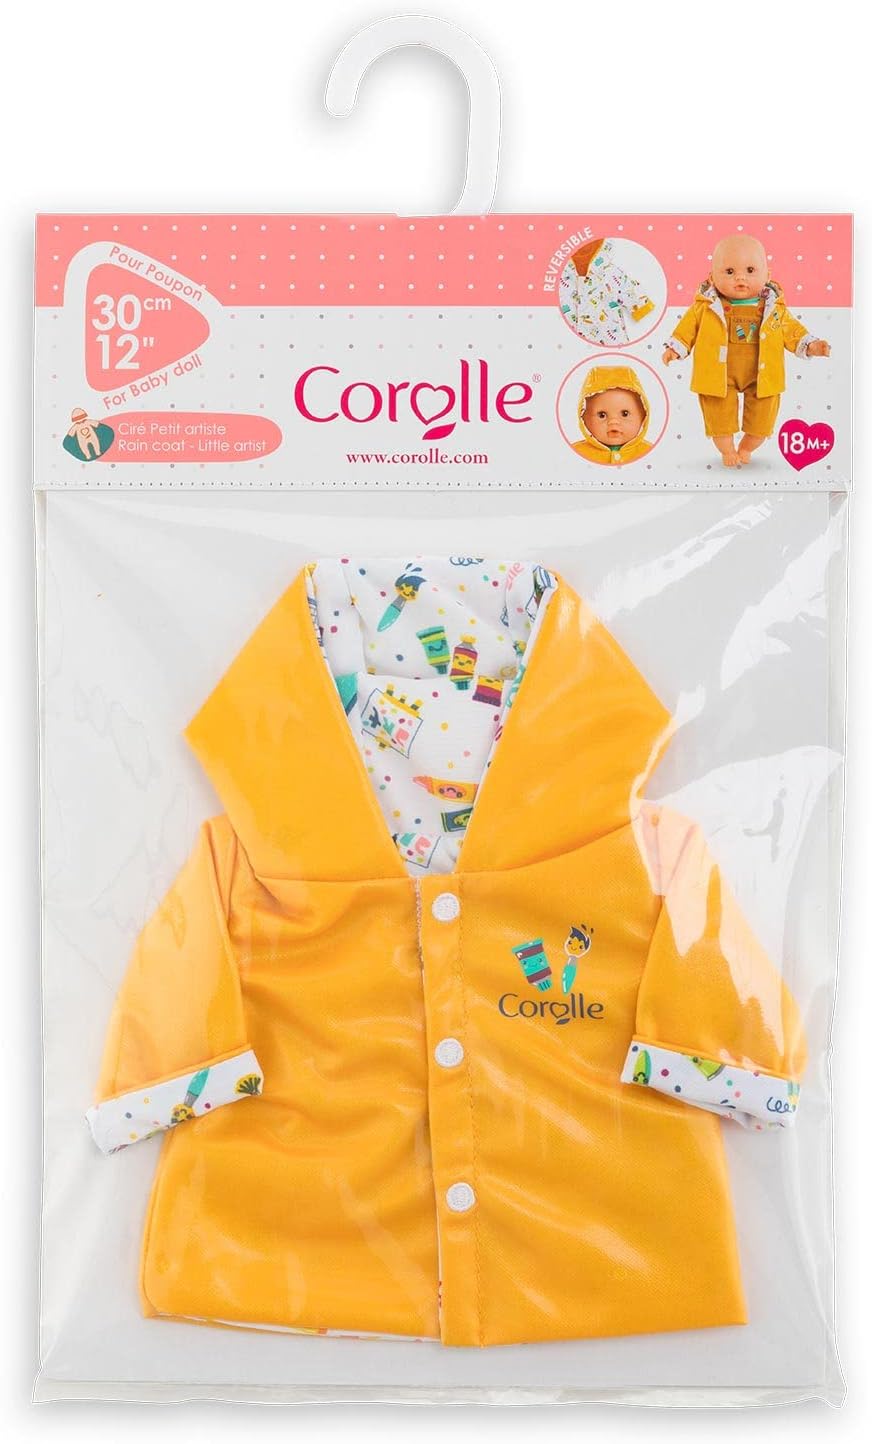 コロール 赤ちゃん 人形 ベビー人形 【送料無料】Corolle Little Artist Rain Coat Baby Doll Outfit - Premium Mon Premier Poupon Baby Doll Clothes and Accessories fit 12